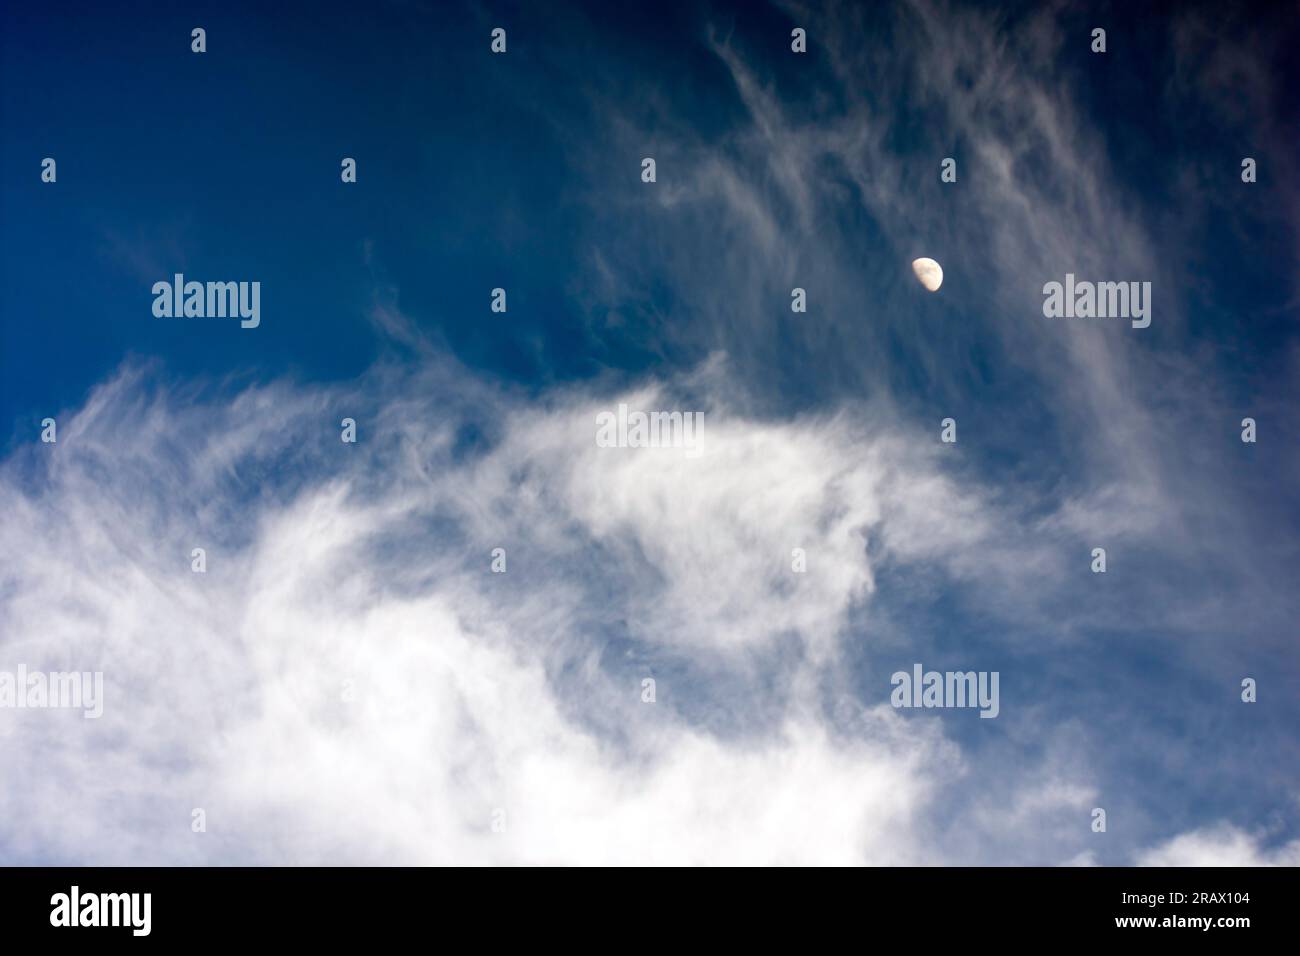 Dramatischer Himmelsersatz mit weichen weißen Wolken vor einem dunkelblauen Himmel mit einem Halbmond sichtbar. Stockfoto